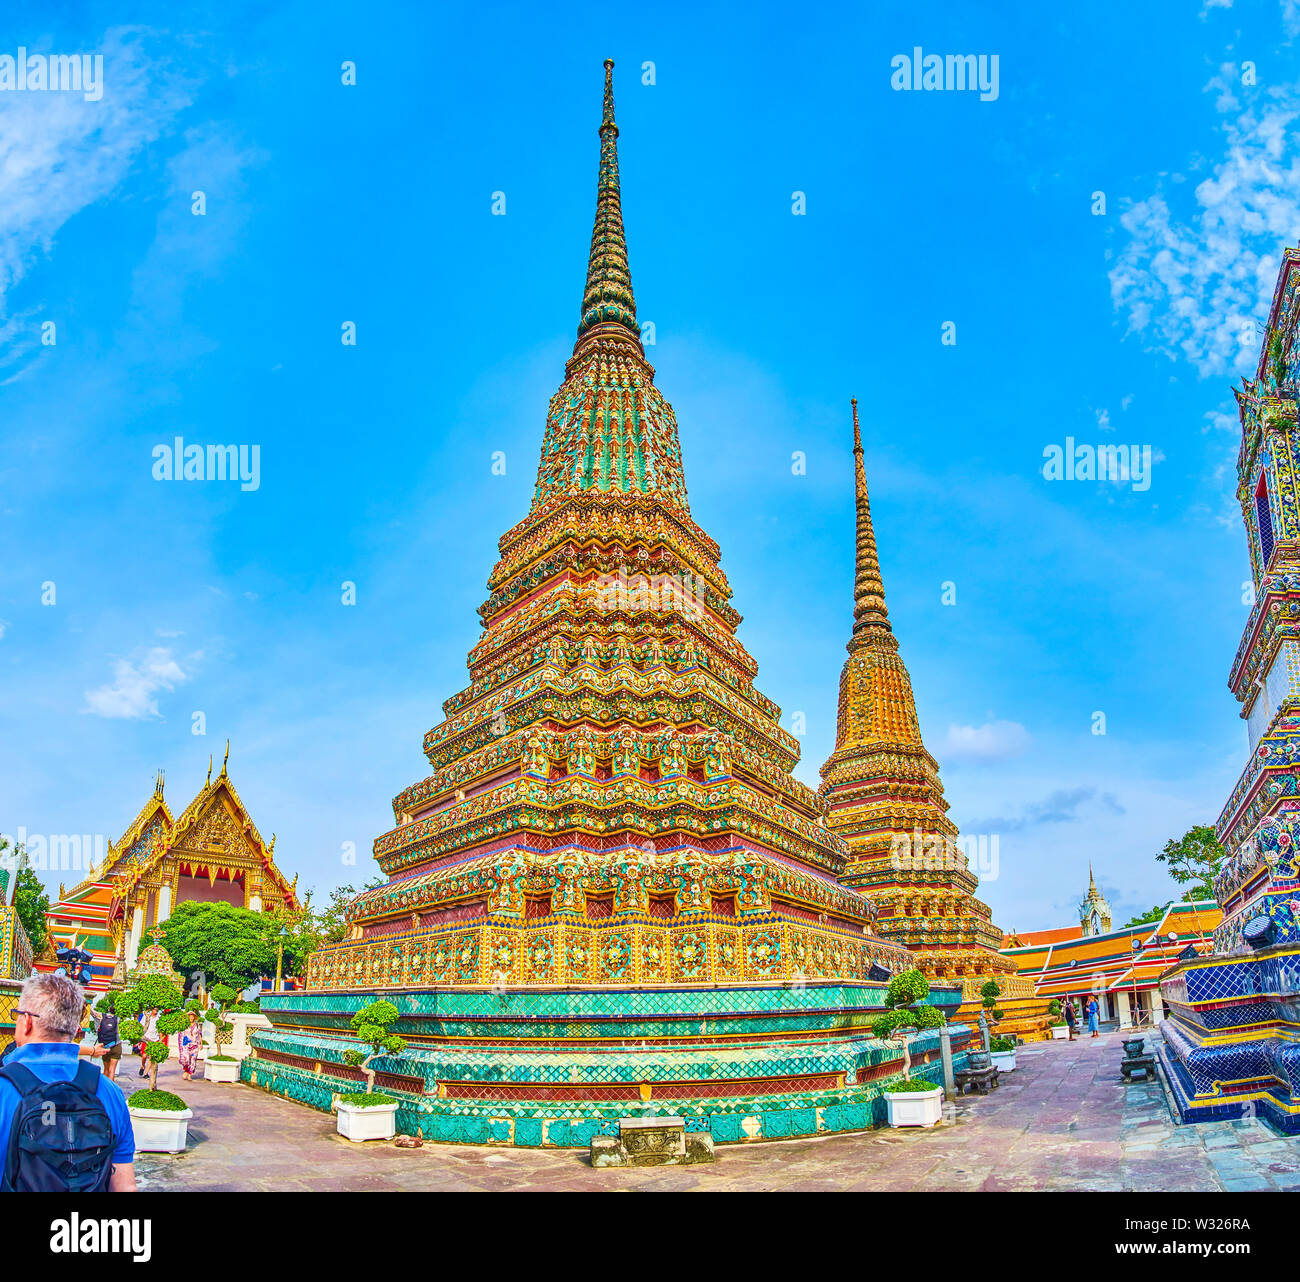 BANGKOK, THAILAND - 22 April, 2019: Das einzigartige gestaltete Pagoden von Phra Maha Chedi im Wat Pho mit bunten Dekorationen mit chinesischen Kacheln, auf Ap Stockfoto